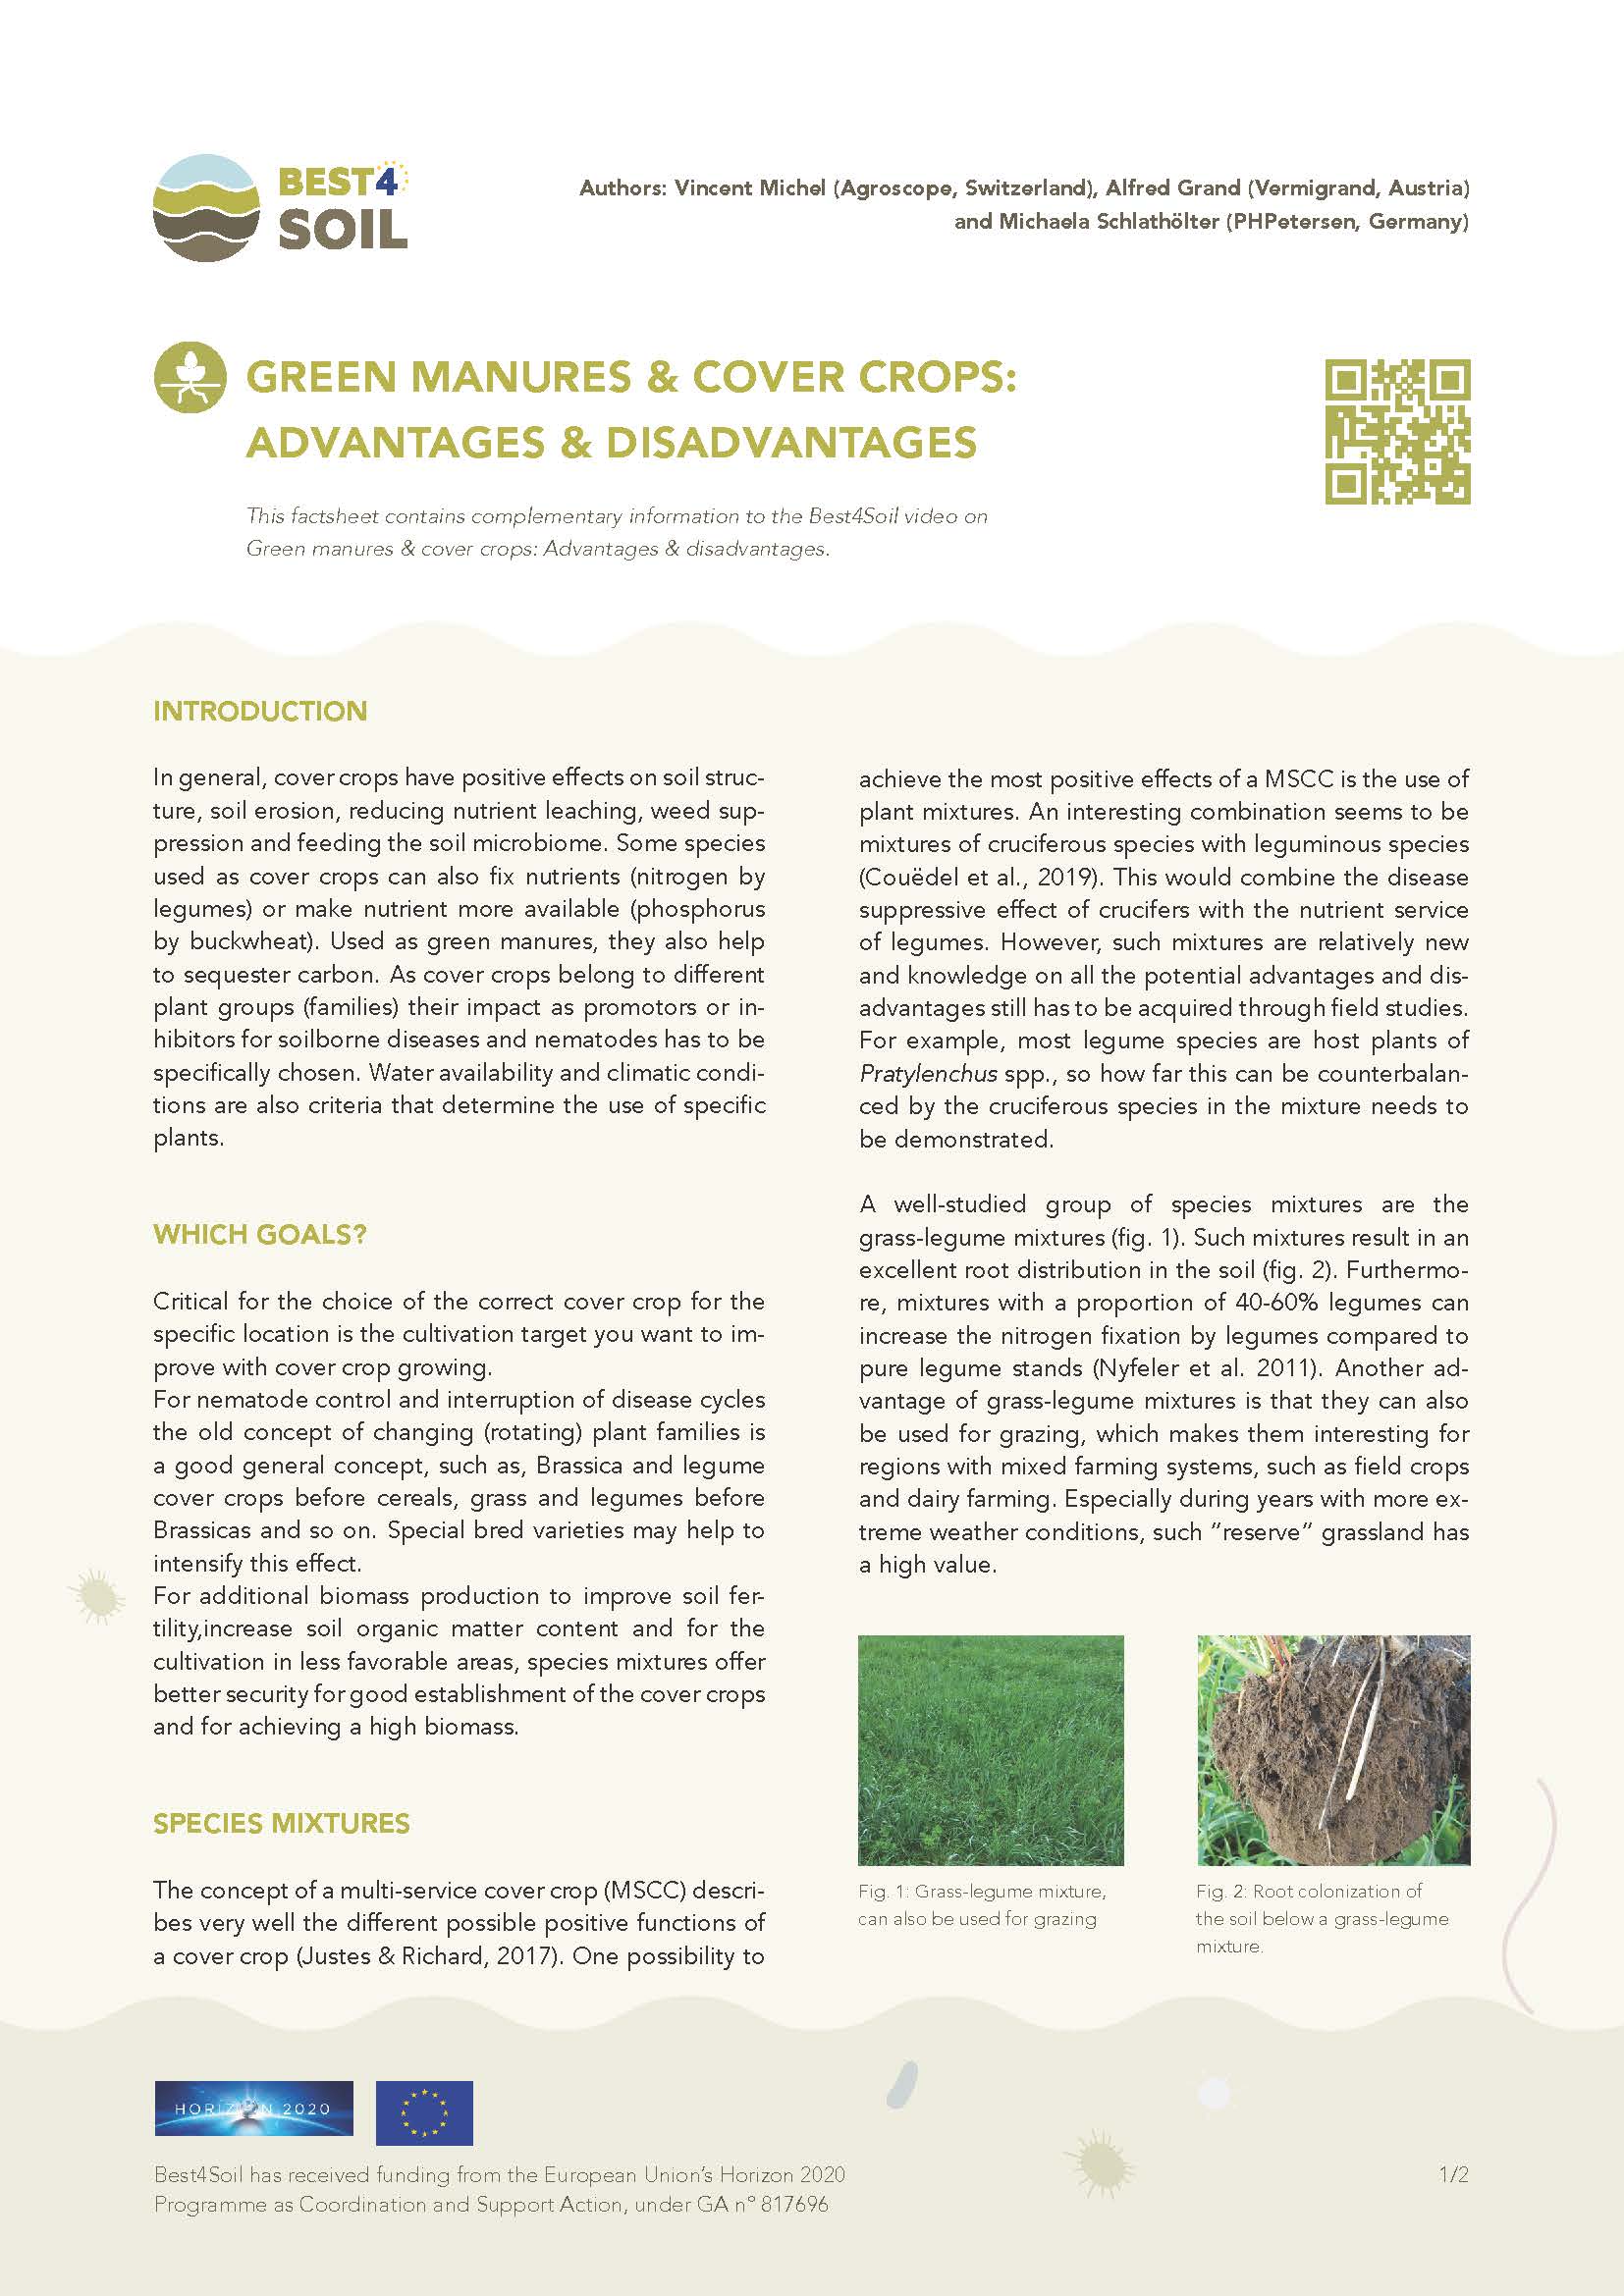 Groenbemesters & bodembedekkers: Voordelen & nadelen (Best4Soil Factsheet)